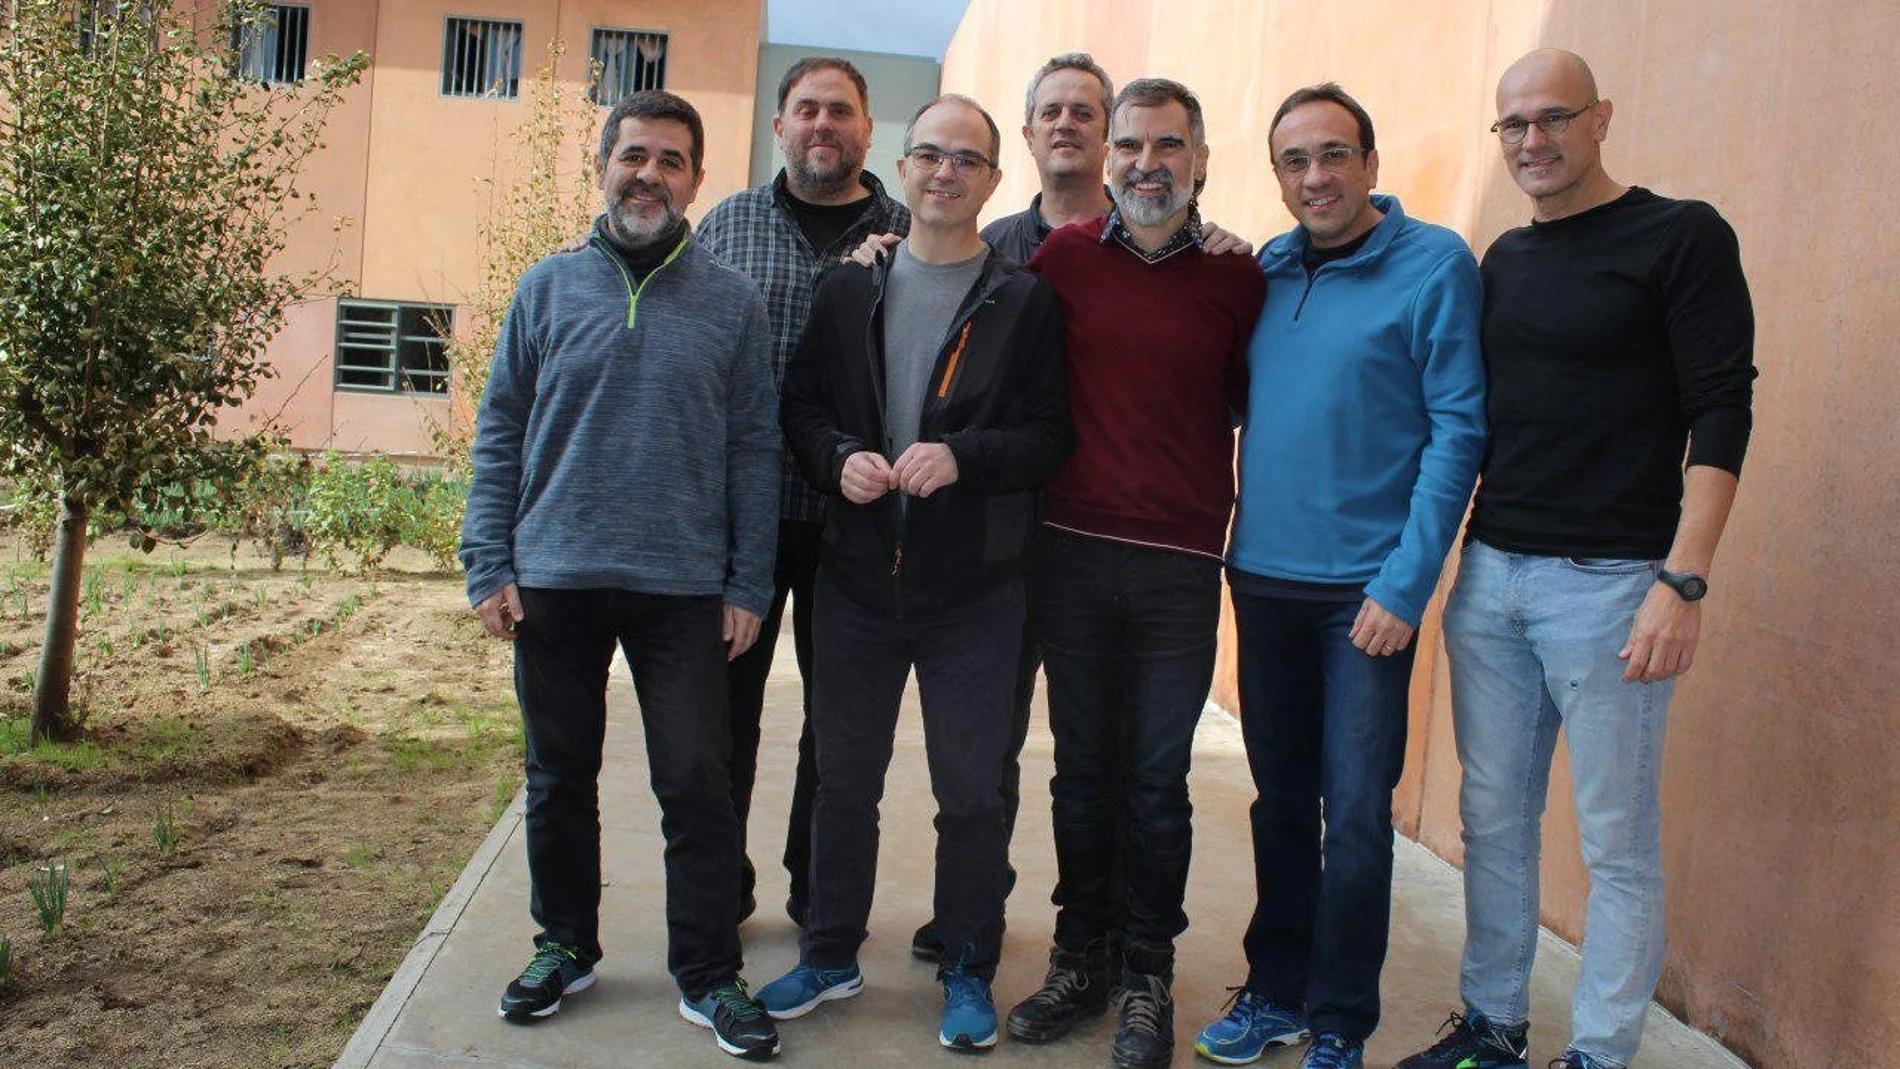 Los siete dirigentes independentistas presos en la cárcel de Lledoners (Barcelona), (de izda. a dcha) Jordi Sànchez, Oriol Junqueras, Jordi Turull, Joaquim Forn, Jordi Cuixart, Josep Rull y Raül Romeva.